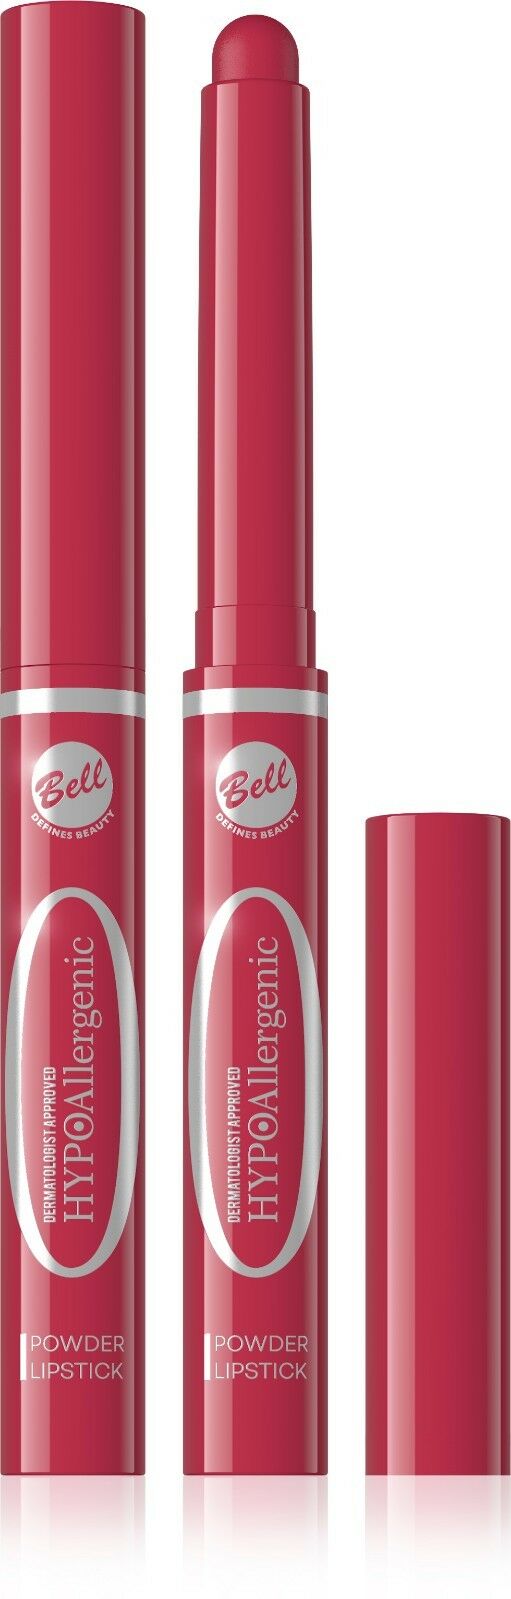 Bell Hypoallergenic Powder Lipstick 04